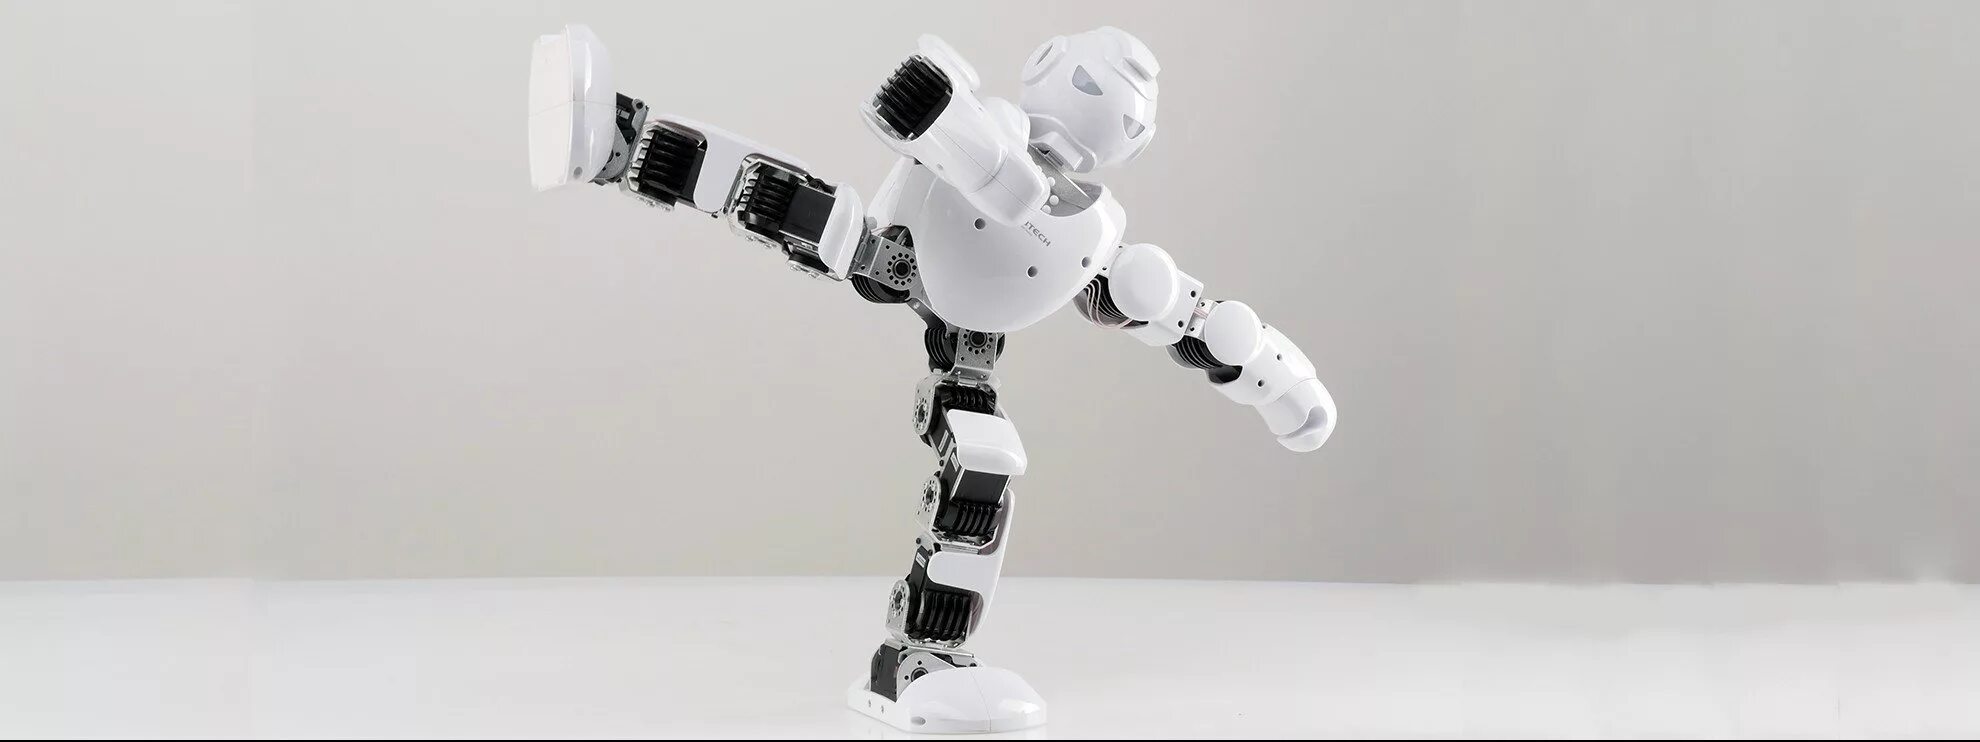 Робот НАО. Робот на Дальнем плане. Концепция умного робота. Grounded умные роботы. Robot show